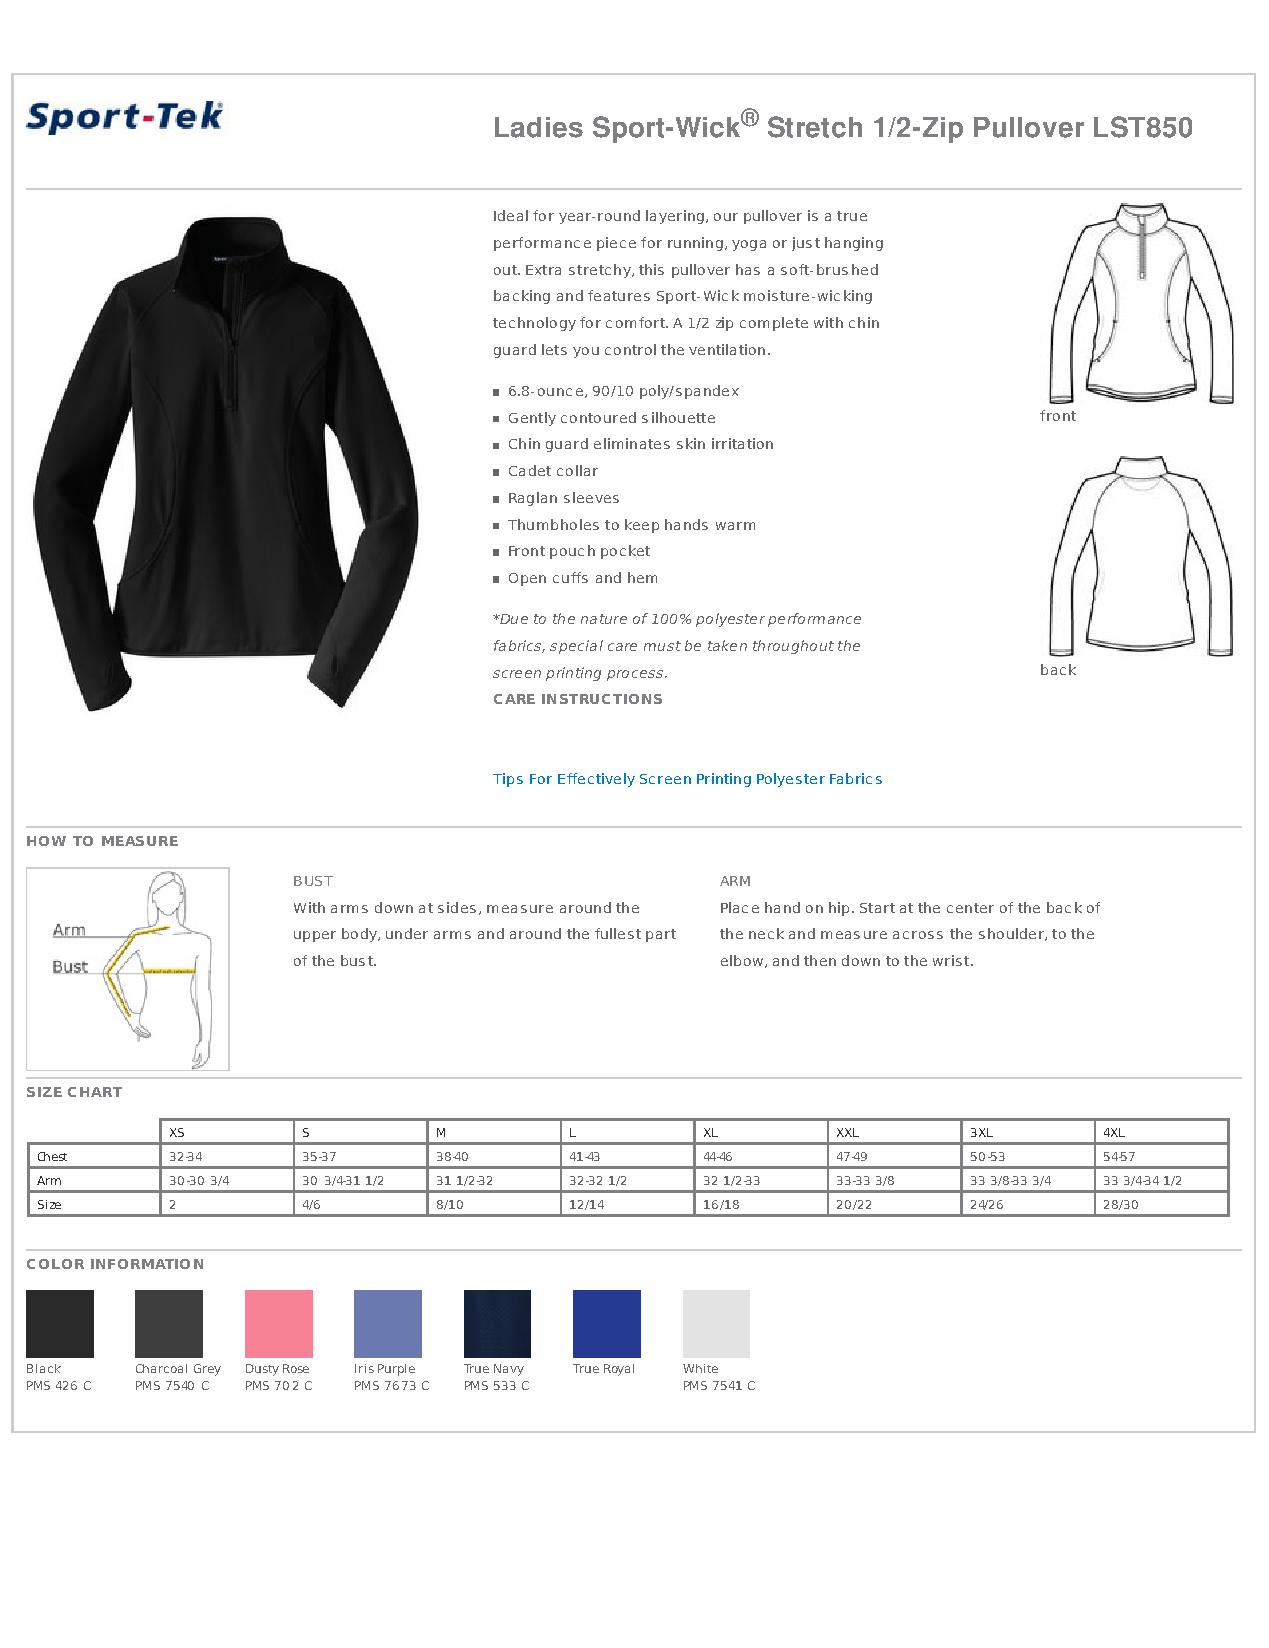 Sport Tek Jacket Size Chart